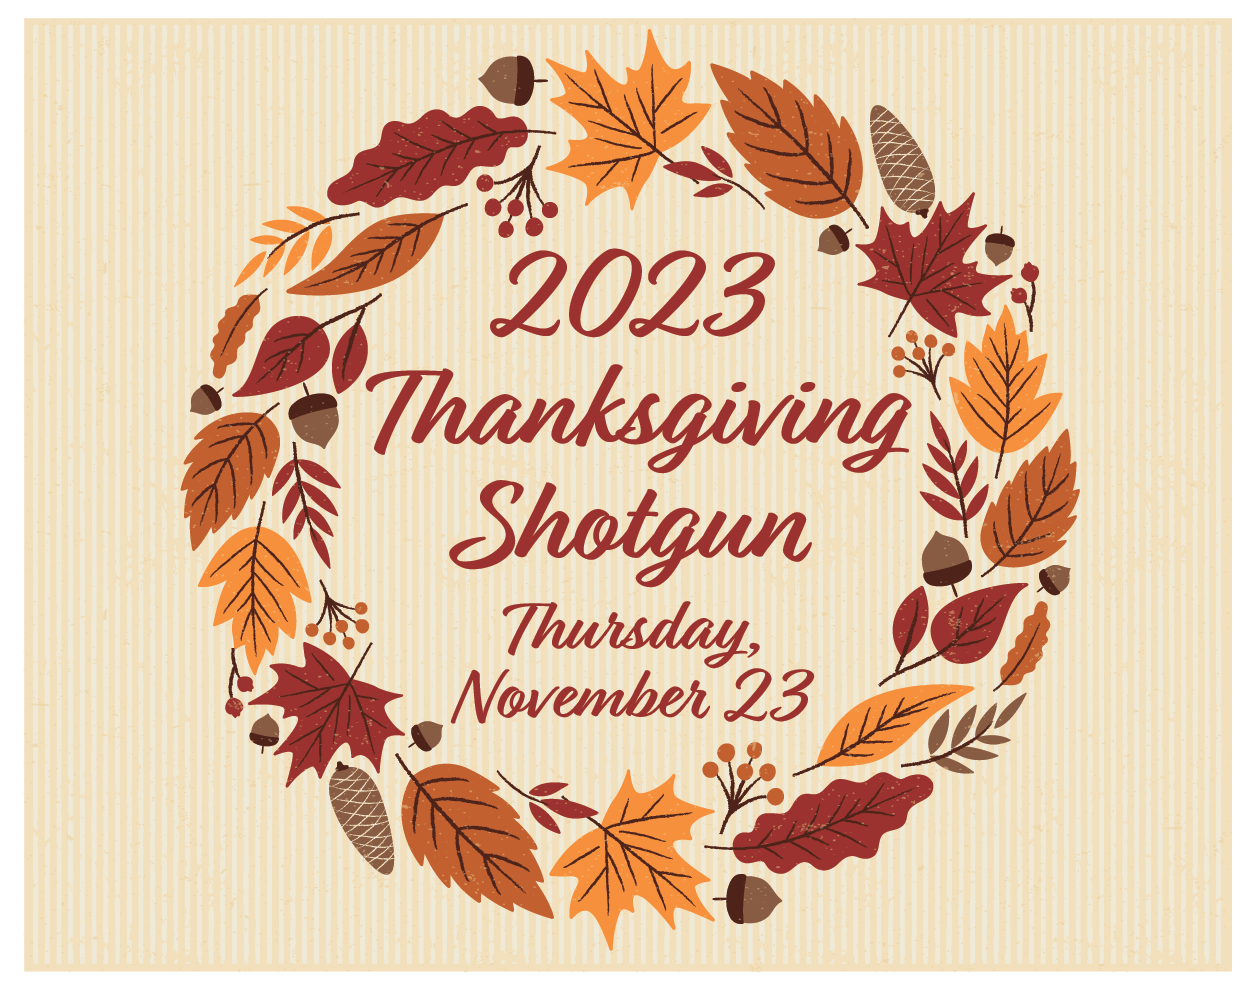 Thanksgiving Shotgun Thursday, November 23rd